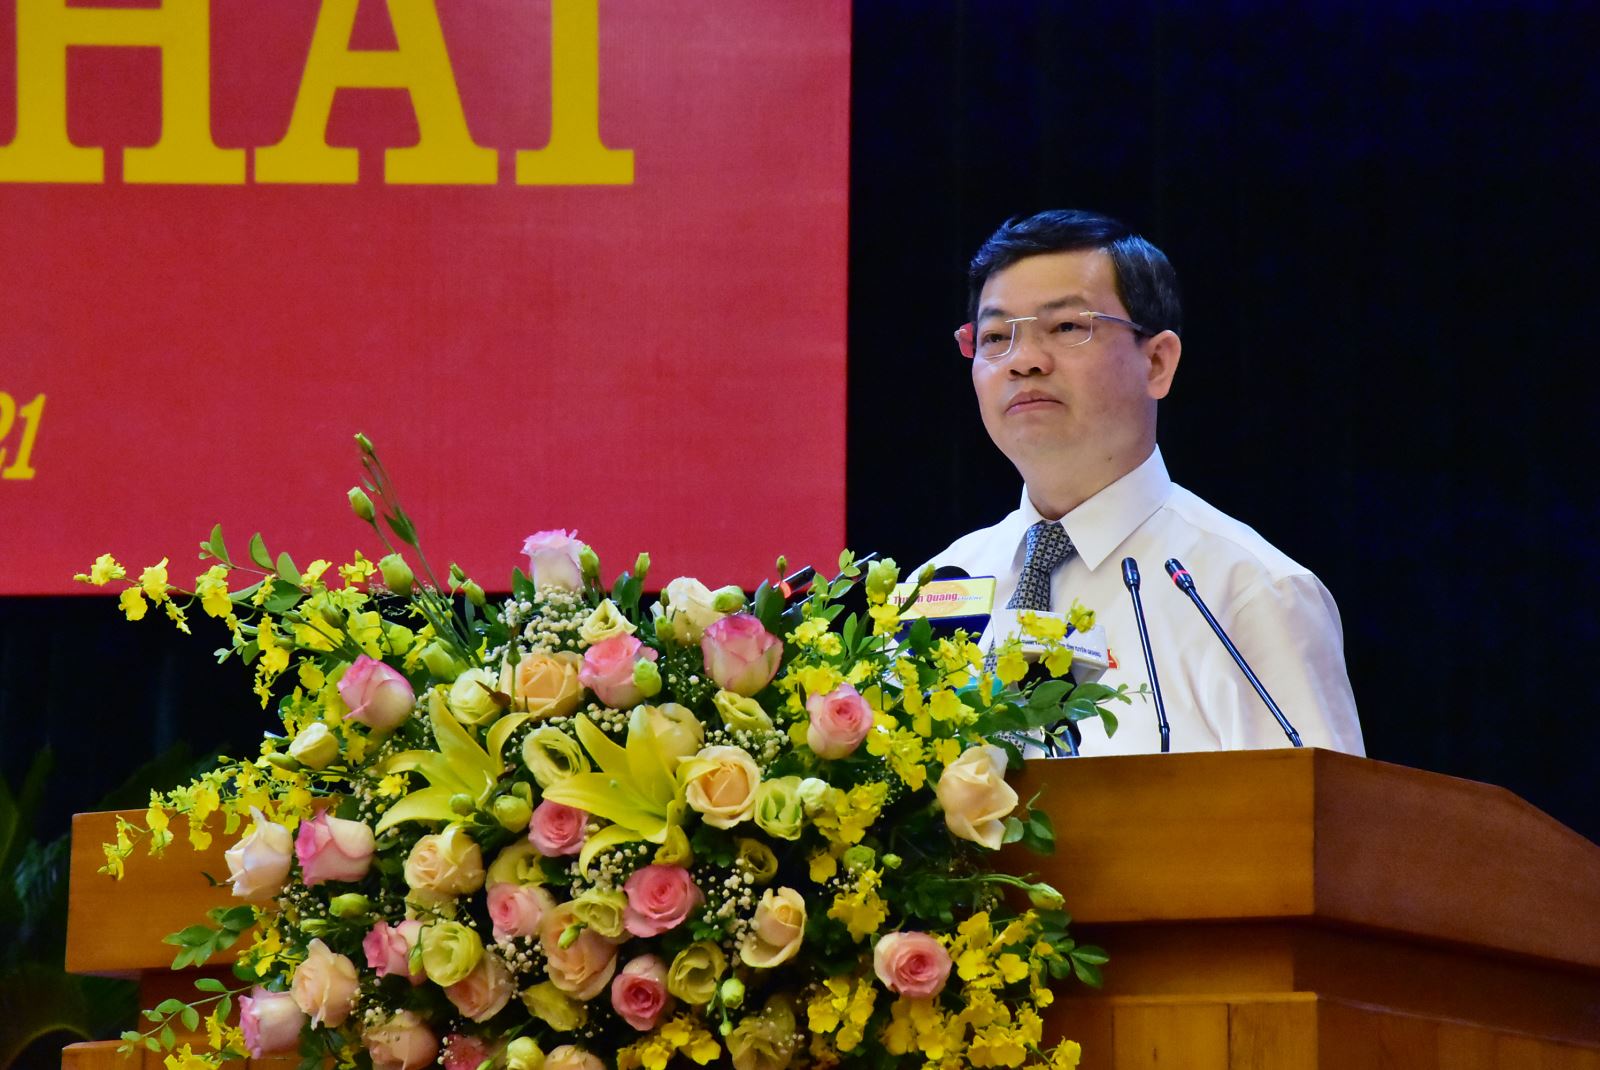 Phó Bí thư Tỉnh ủy, Chủ tịch UBND tỉnh Nguyễn Văn Sơn Báoo kết quả thực hiện nhiệm vụ phát triển kinh tế - xã hội, quốc phòng - an ninh 6 tháng đầu năm; nhiệm vụ, giải pháp phát triển kinh tế - xã hội, quốc phòng - an ninh 6 tháng cuối năm 2021. 